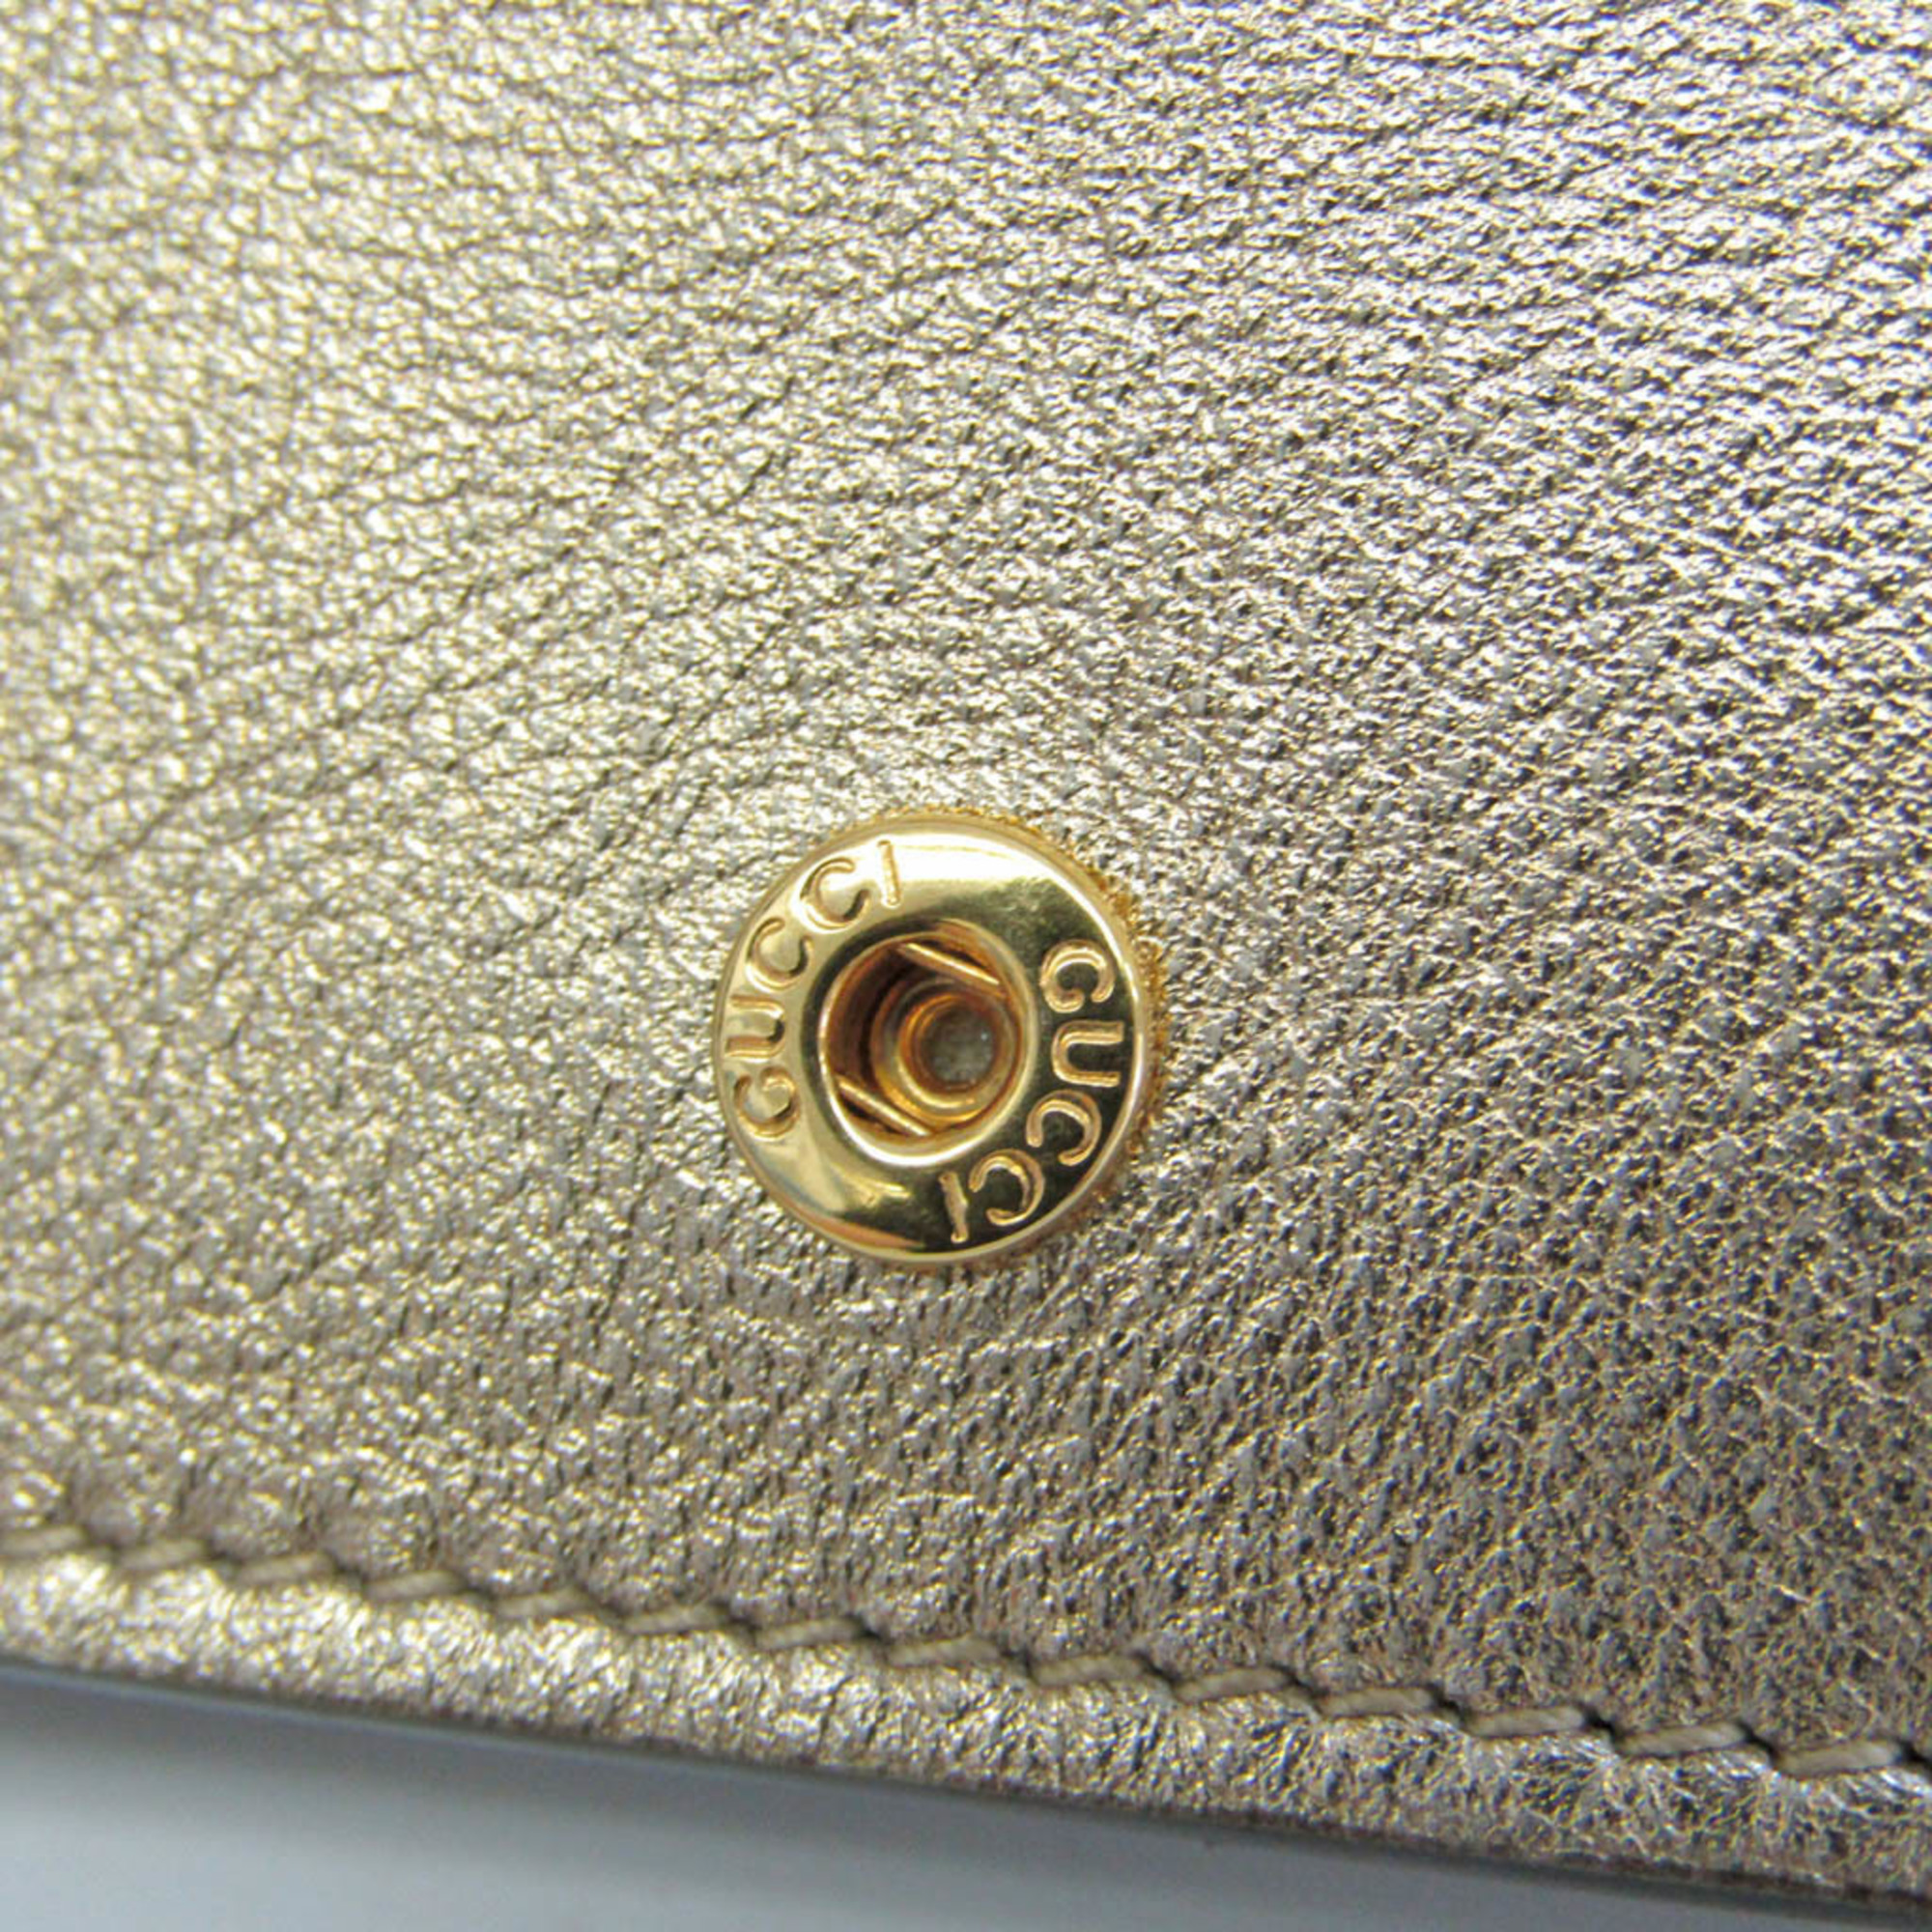 グッチ(Gucci) GGマーモント 456126 レディース  リザード 財布（二つ折り） ゴールド